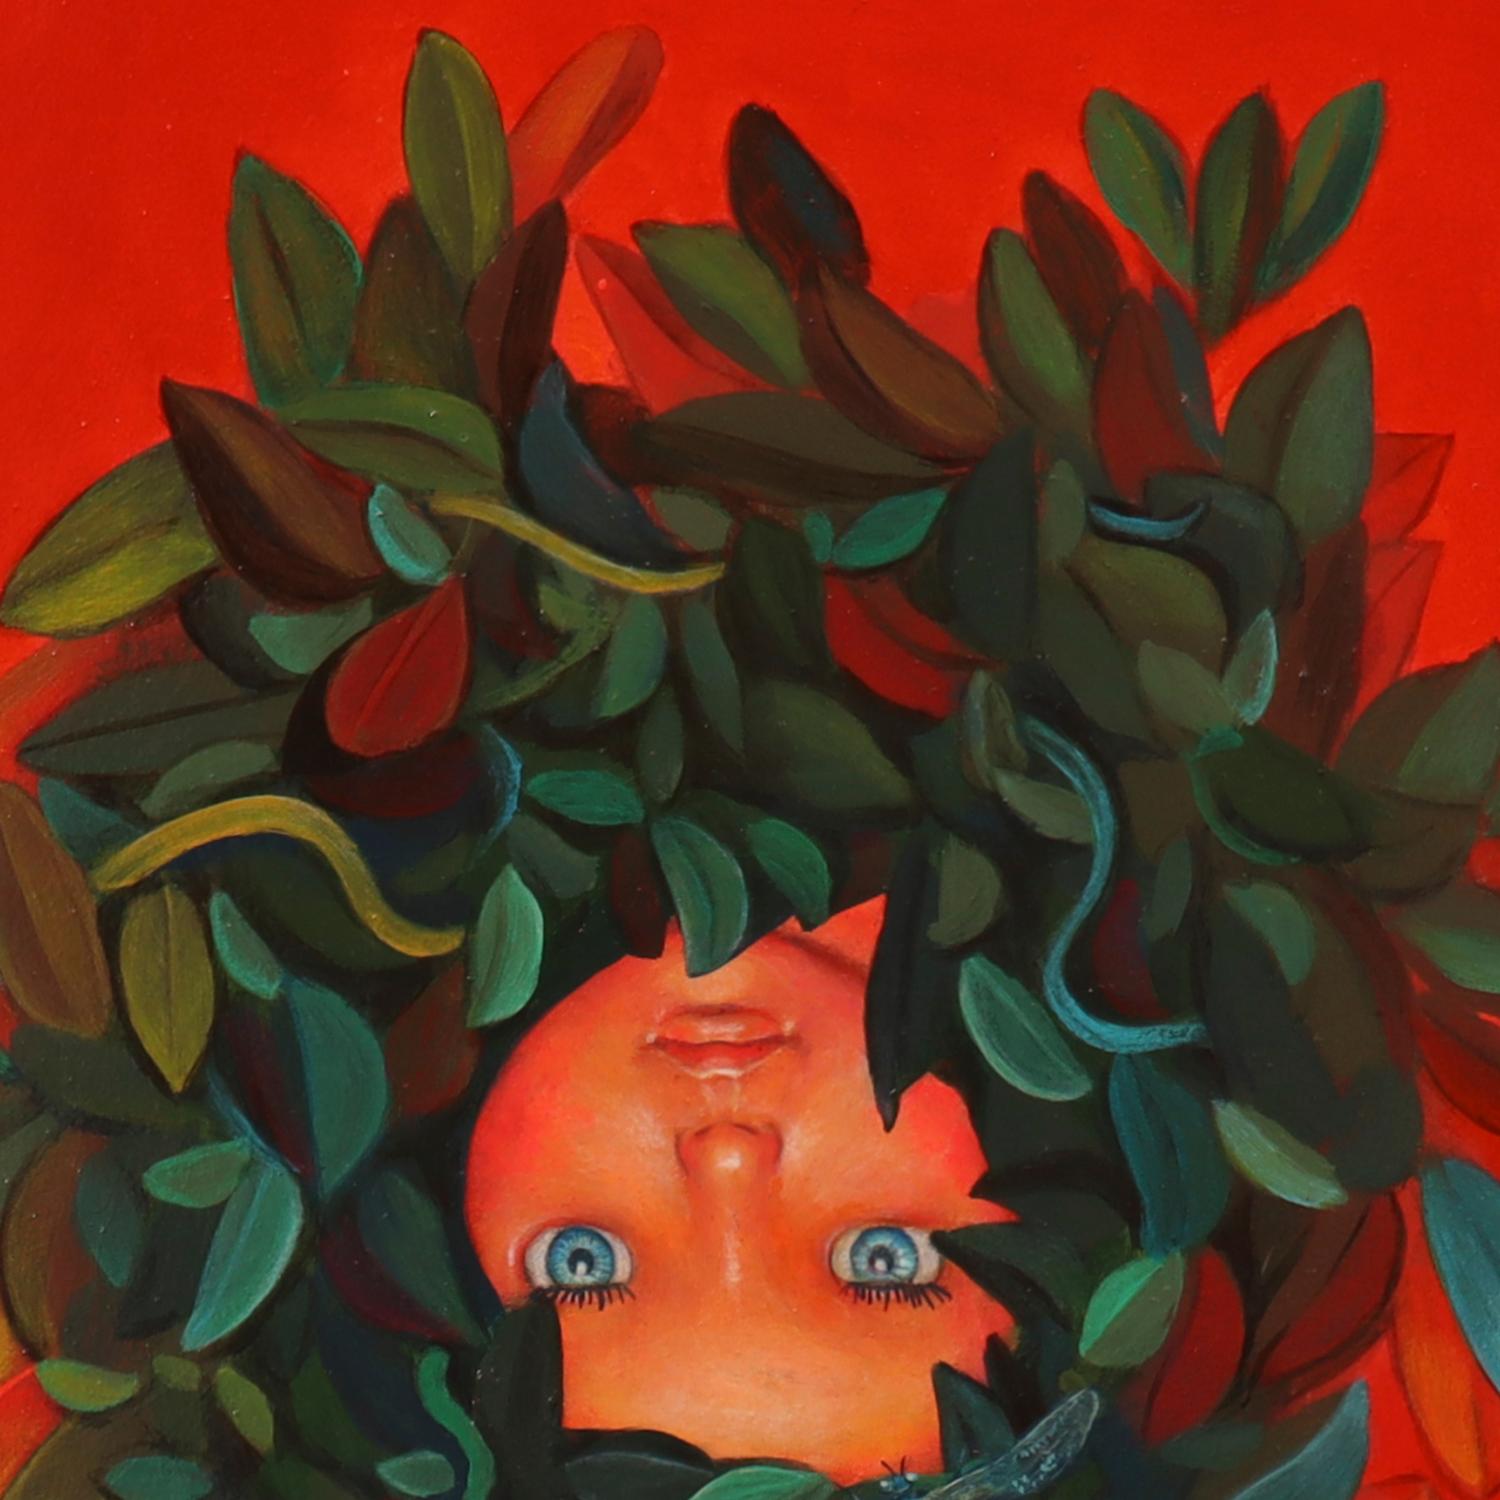 Contemporary Pop Surrealist Portrait. Doll with Vegetal Motifs. 